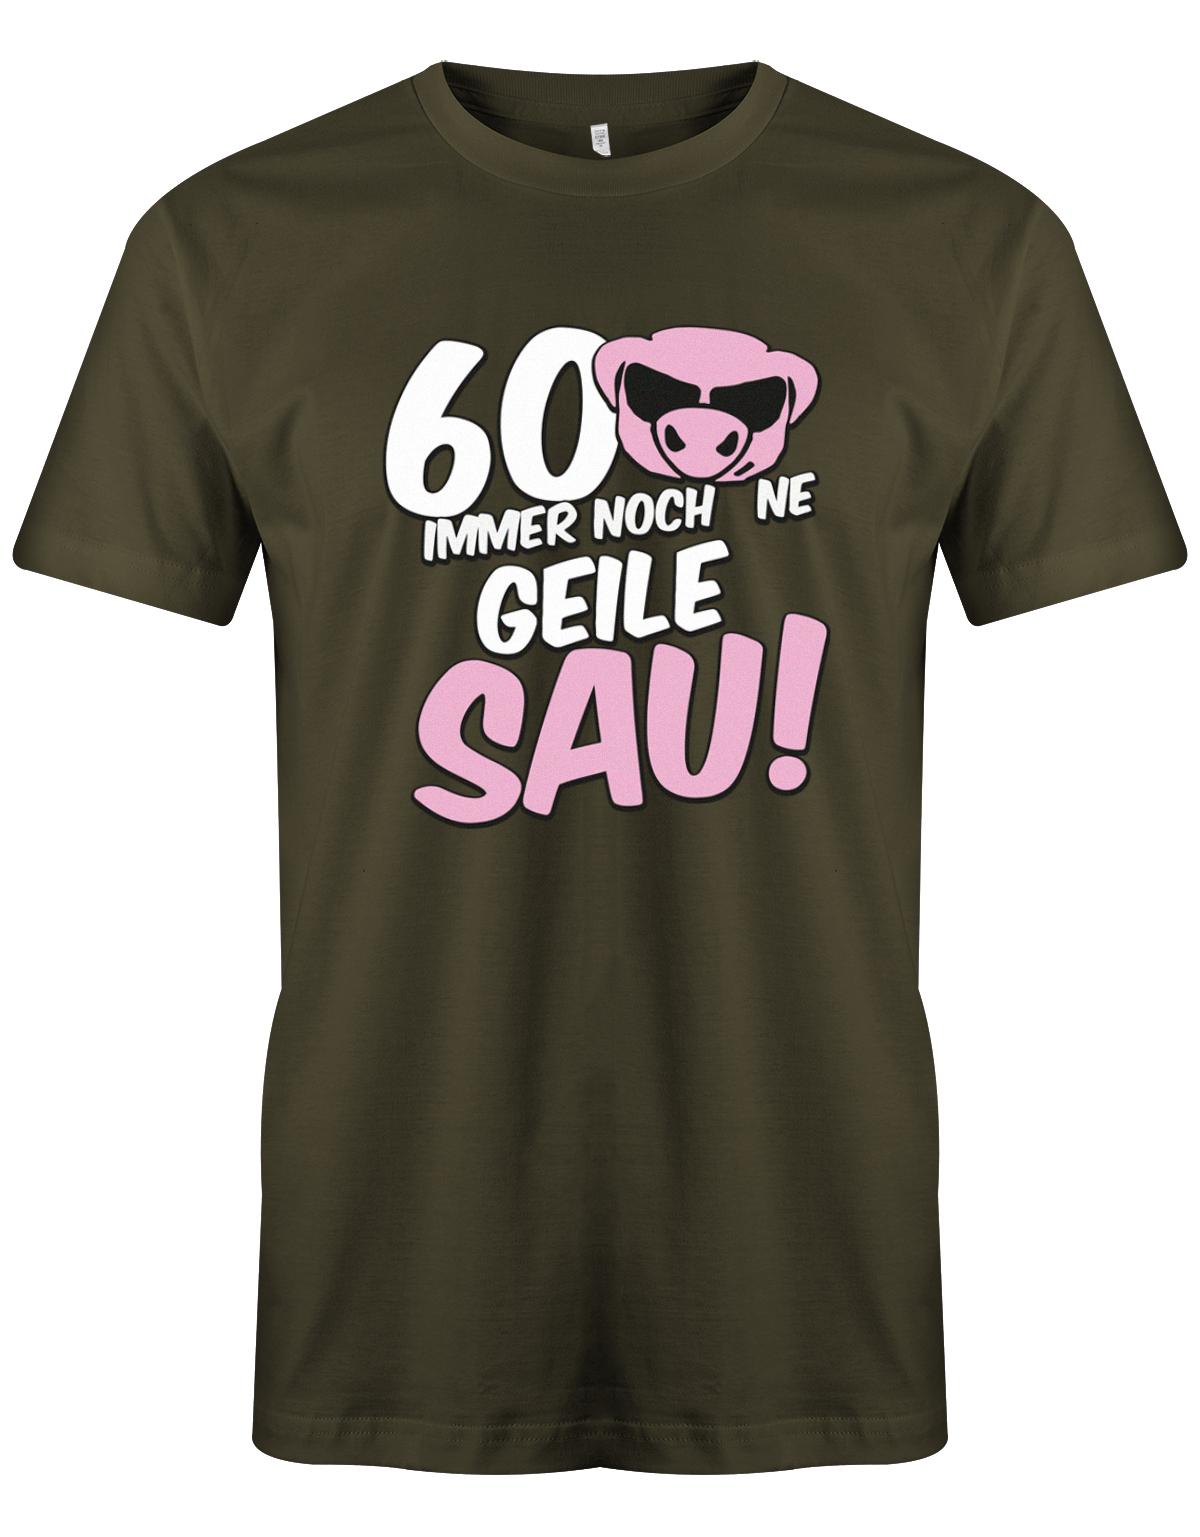 Lustiges T-Shirt zum 60 Geburtstag für den Mann Bedruckt mit 60 Immer noch 'ne geile Sau! Sau mit Sonnenbrille Army